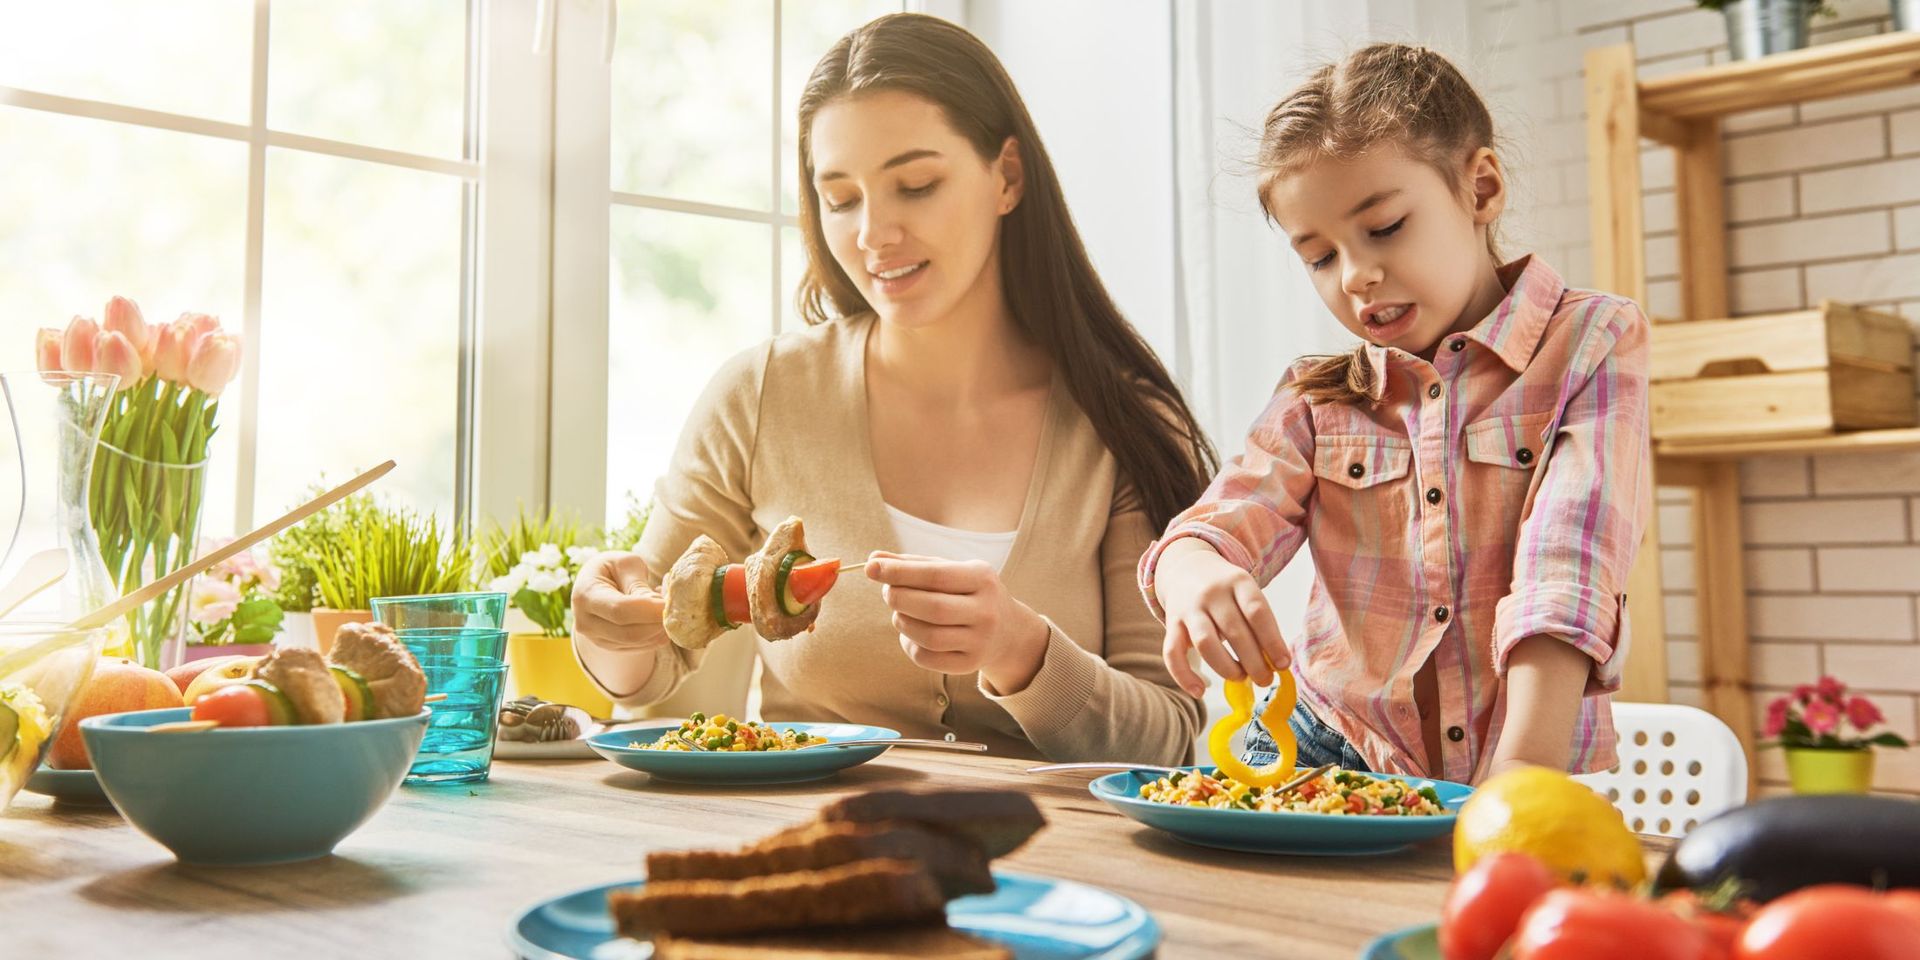 Segítséggel egészségesebben étkeznének az egyszülős családok